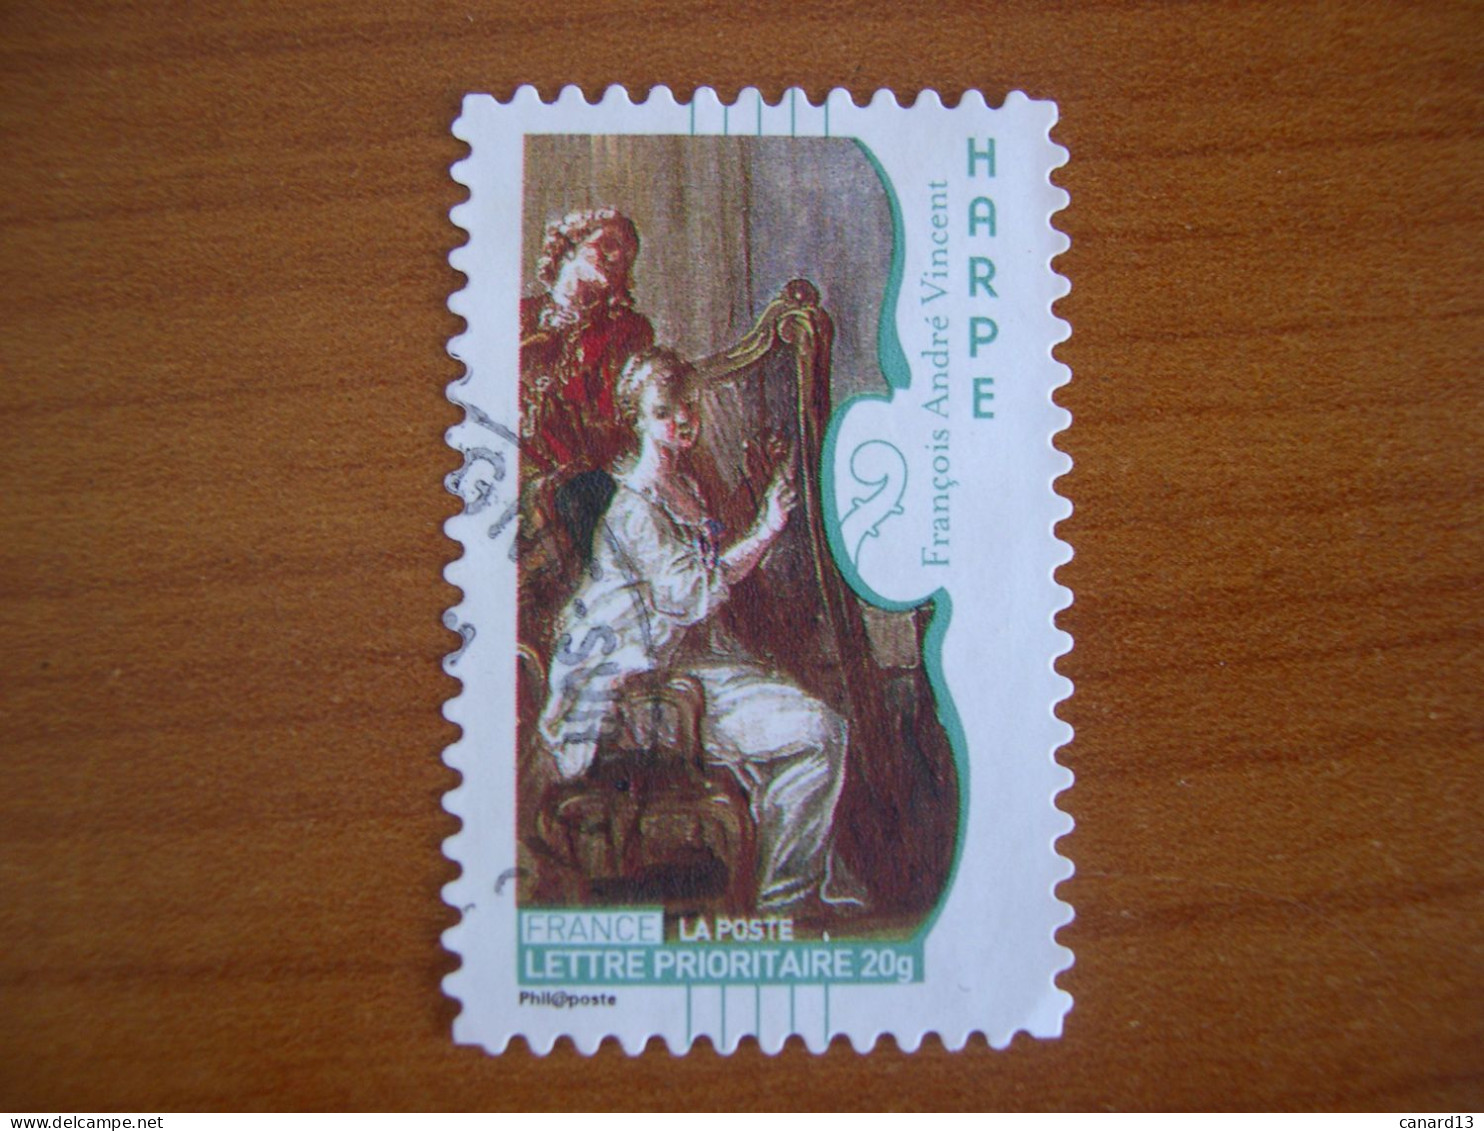 France Obl   N° 391 Cachet Rond Noir - Used Stamps